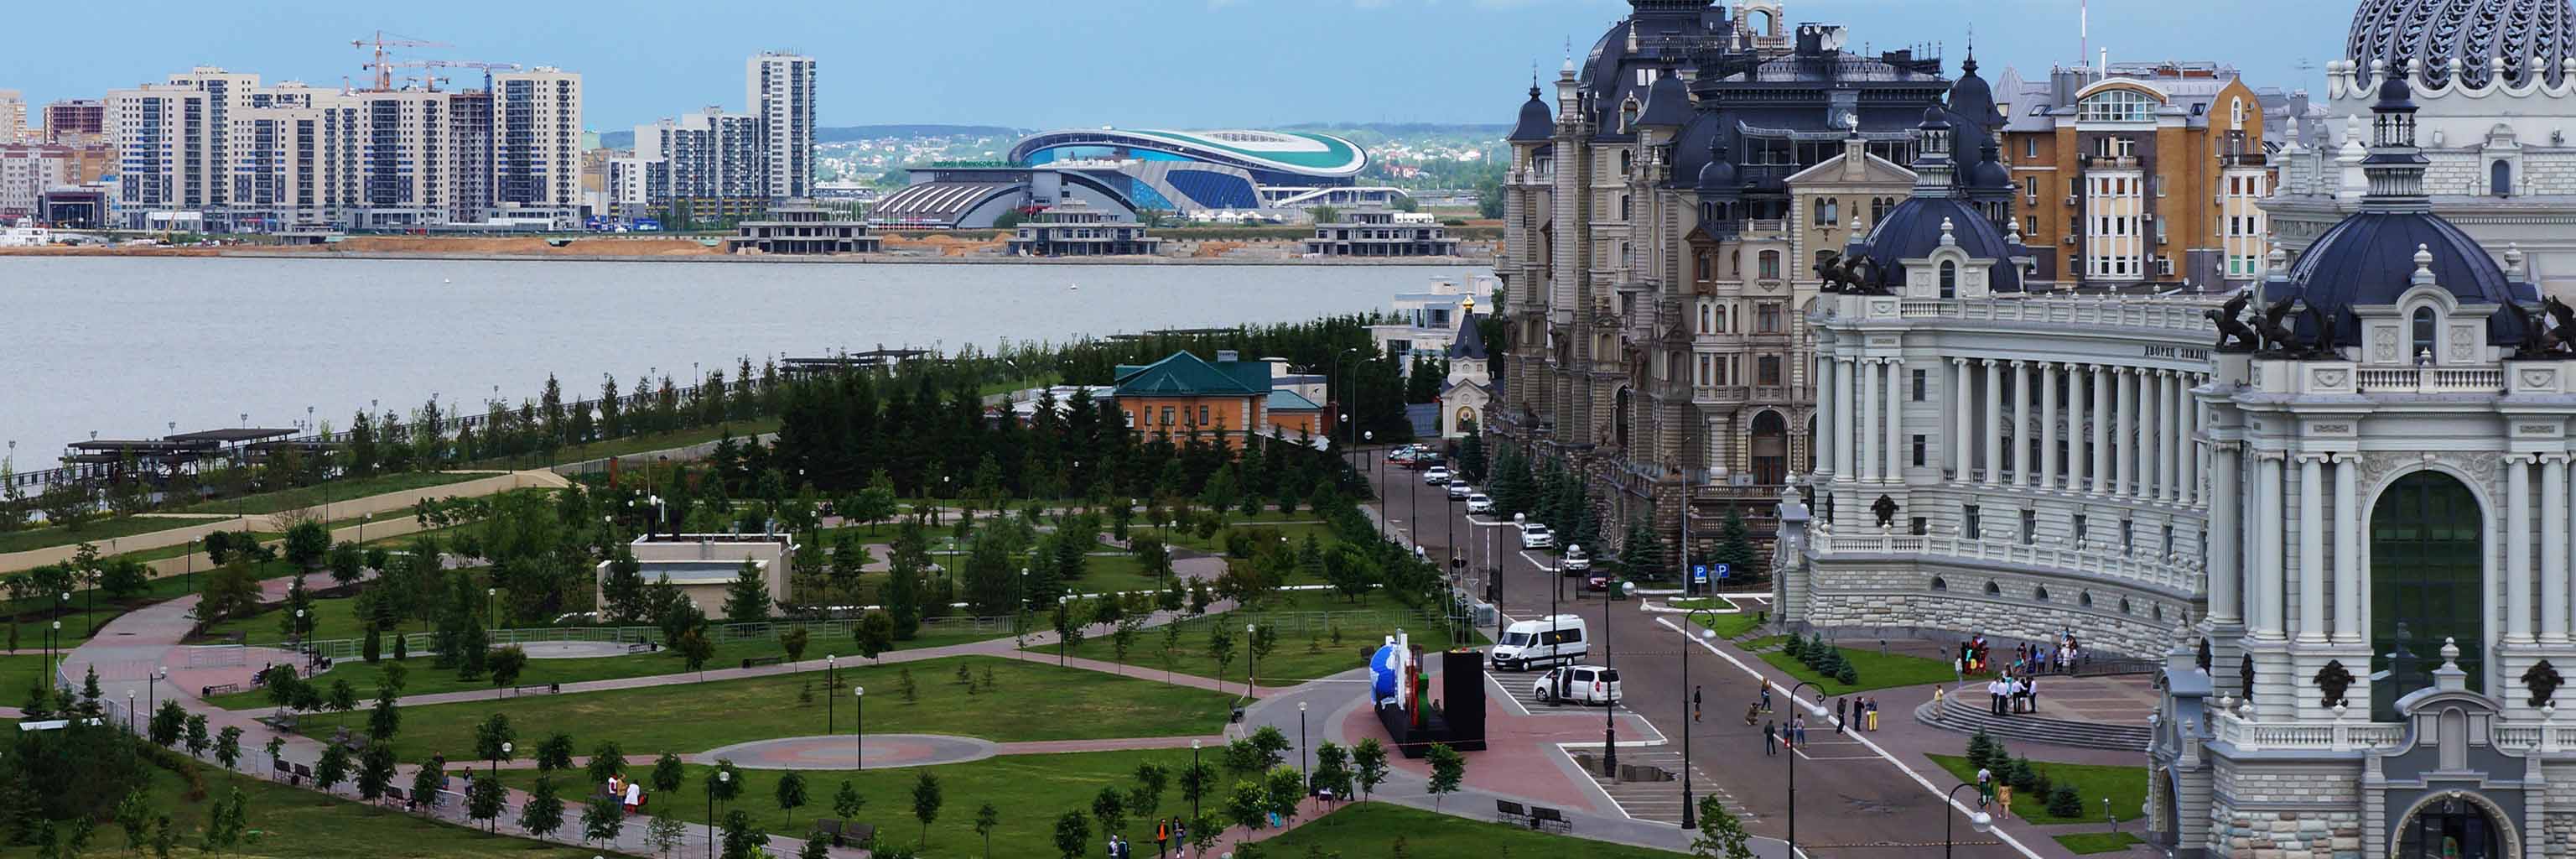 Downtown Kazan, Tatarstan